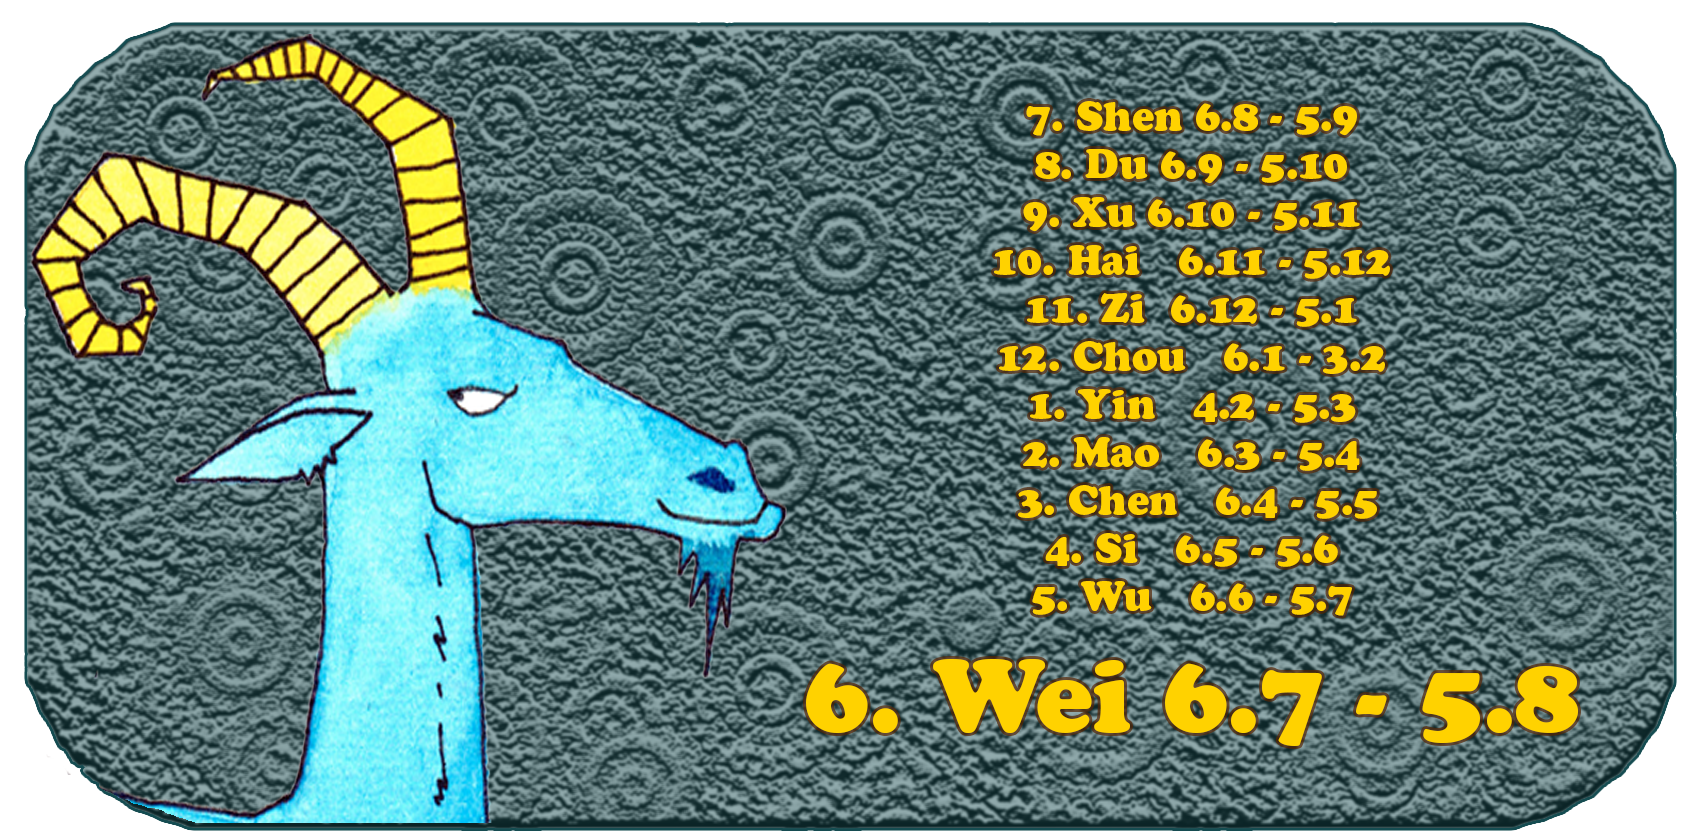 Zodíaco chino | Los doce animales chinos | Cabra, julio, mes 6, Wei